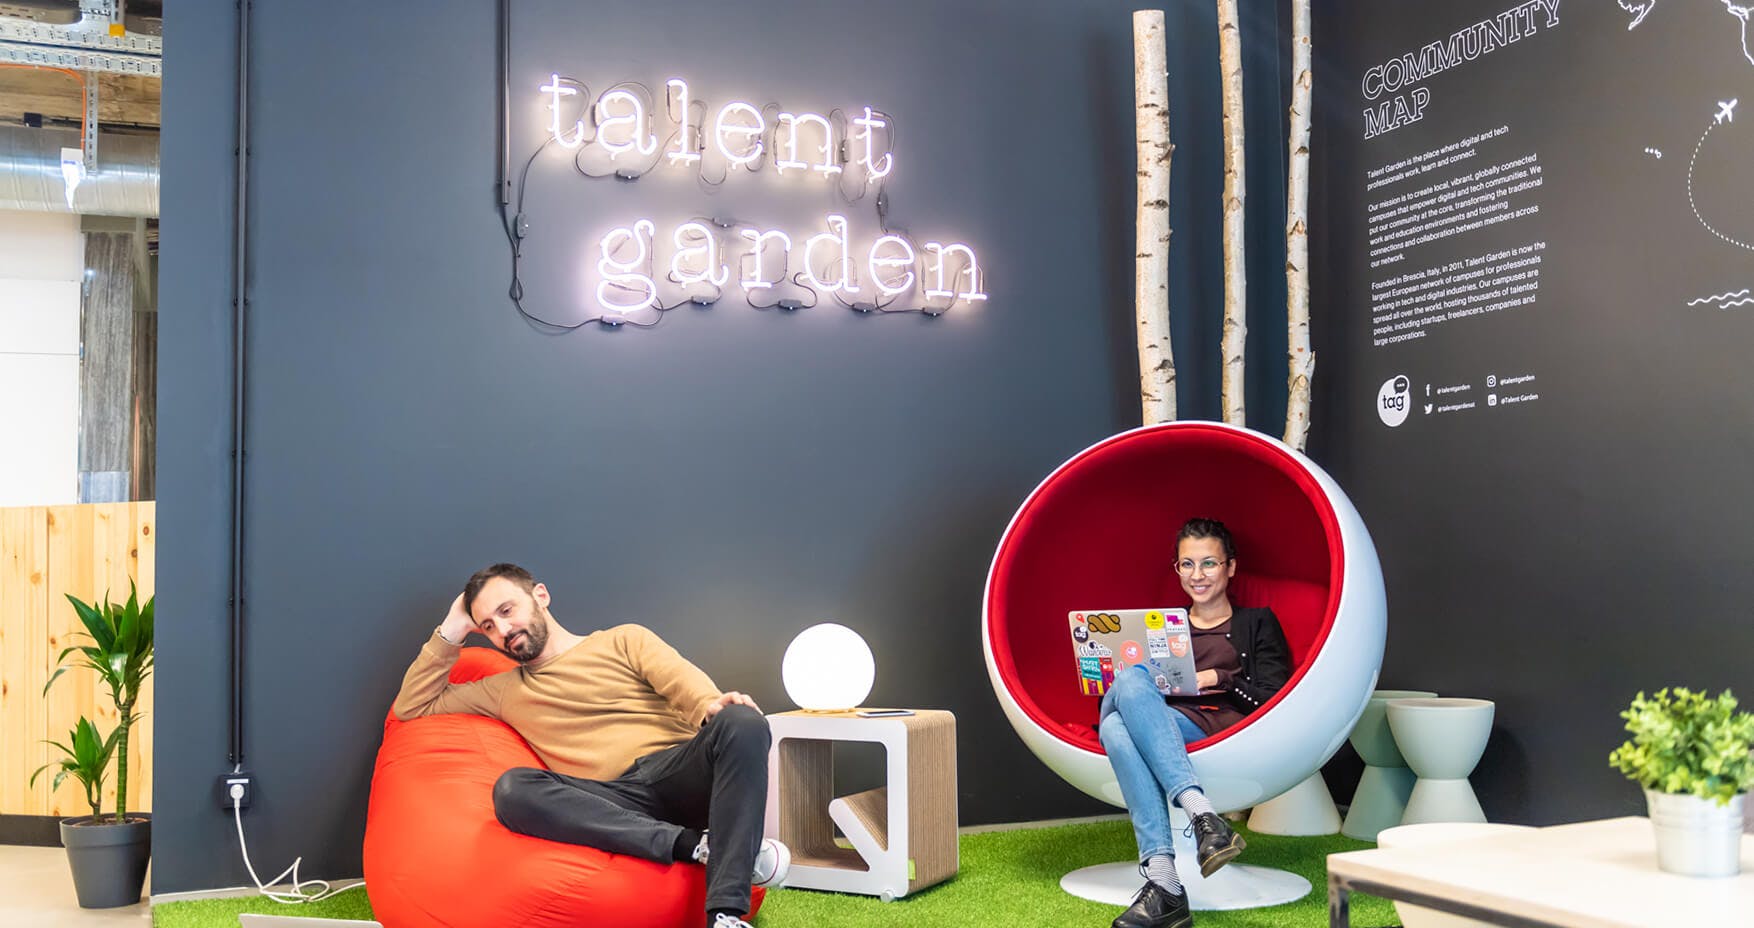 Talent Garden Wien Lounge